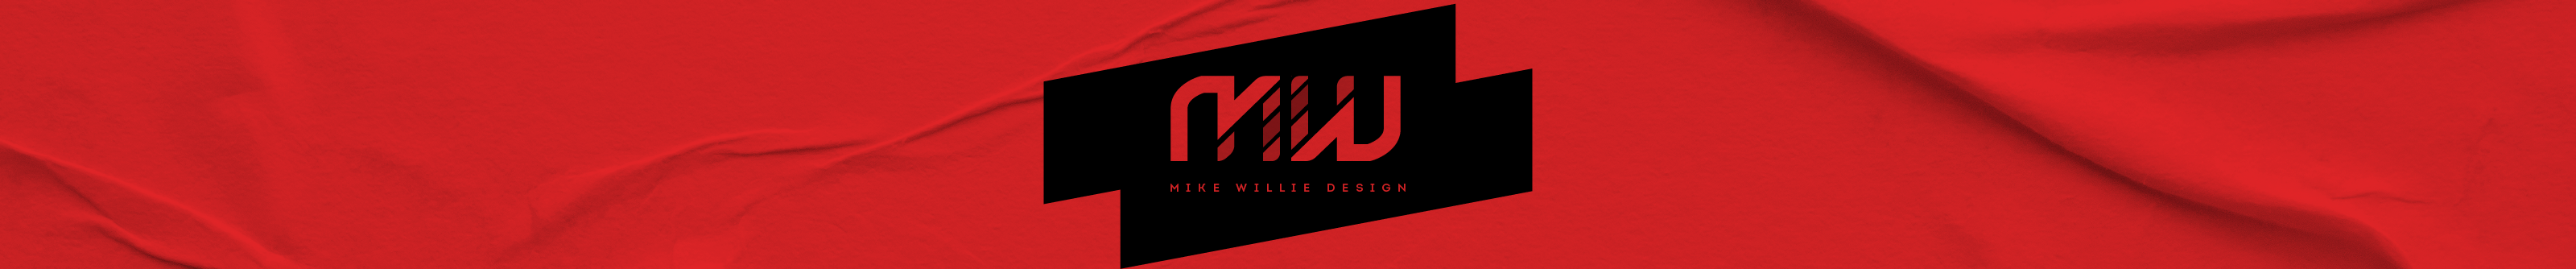 Banner de perfil de Mike Willie